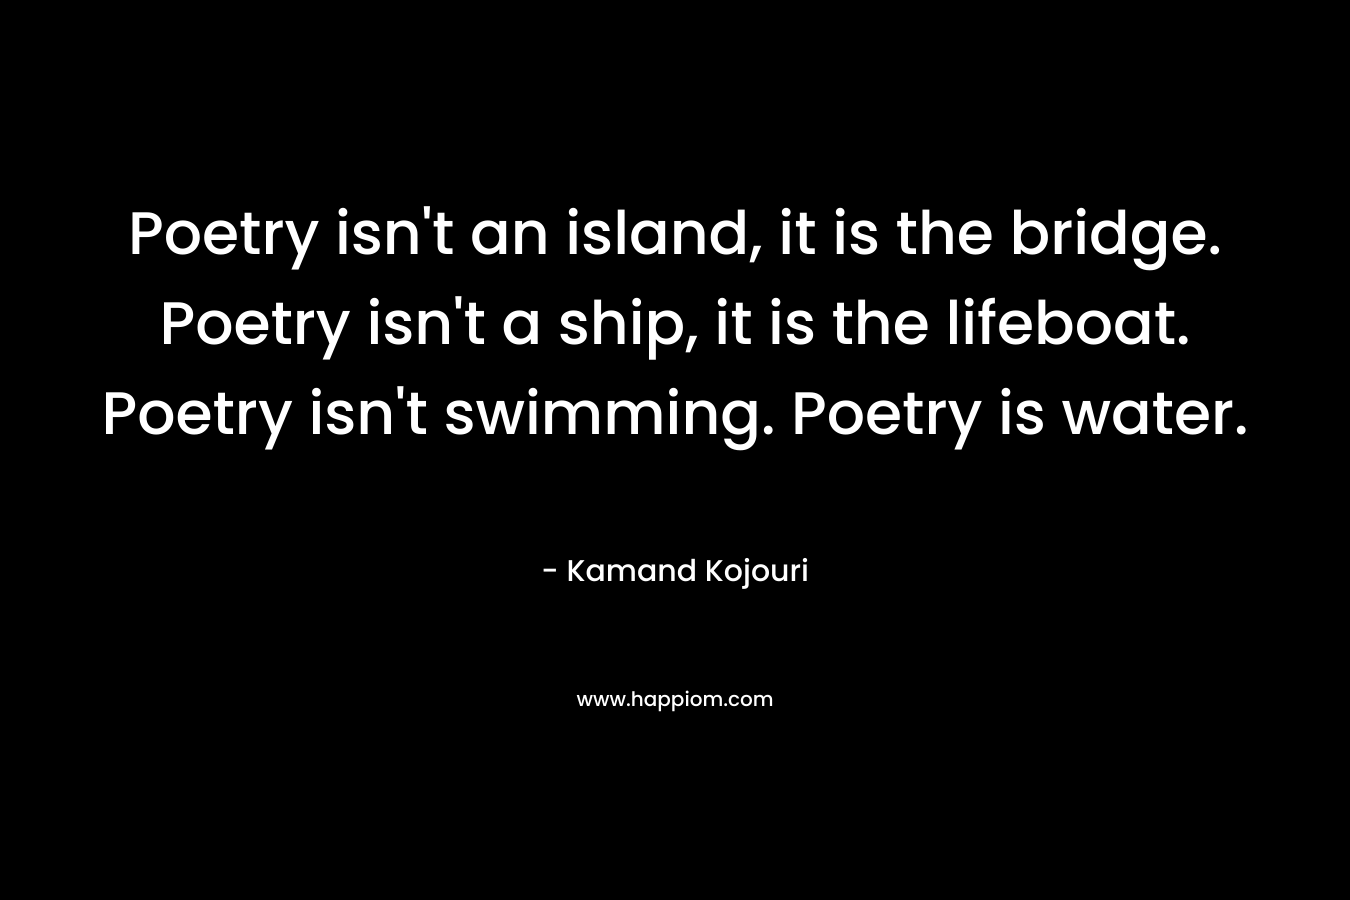 Poetry isn't an island, it is the bridge. Poetry isn't a ship, it is the lifeboat. Poetry isn't swimming. Poetry is water.